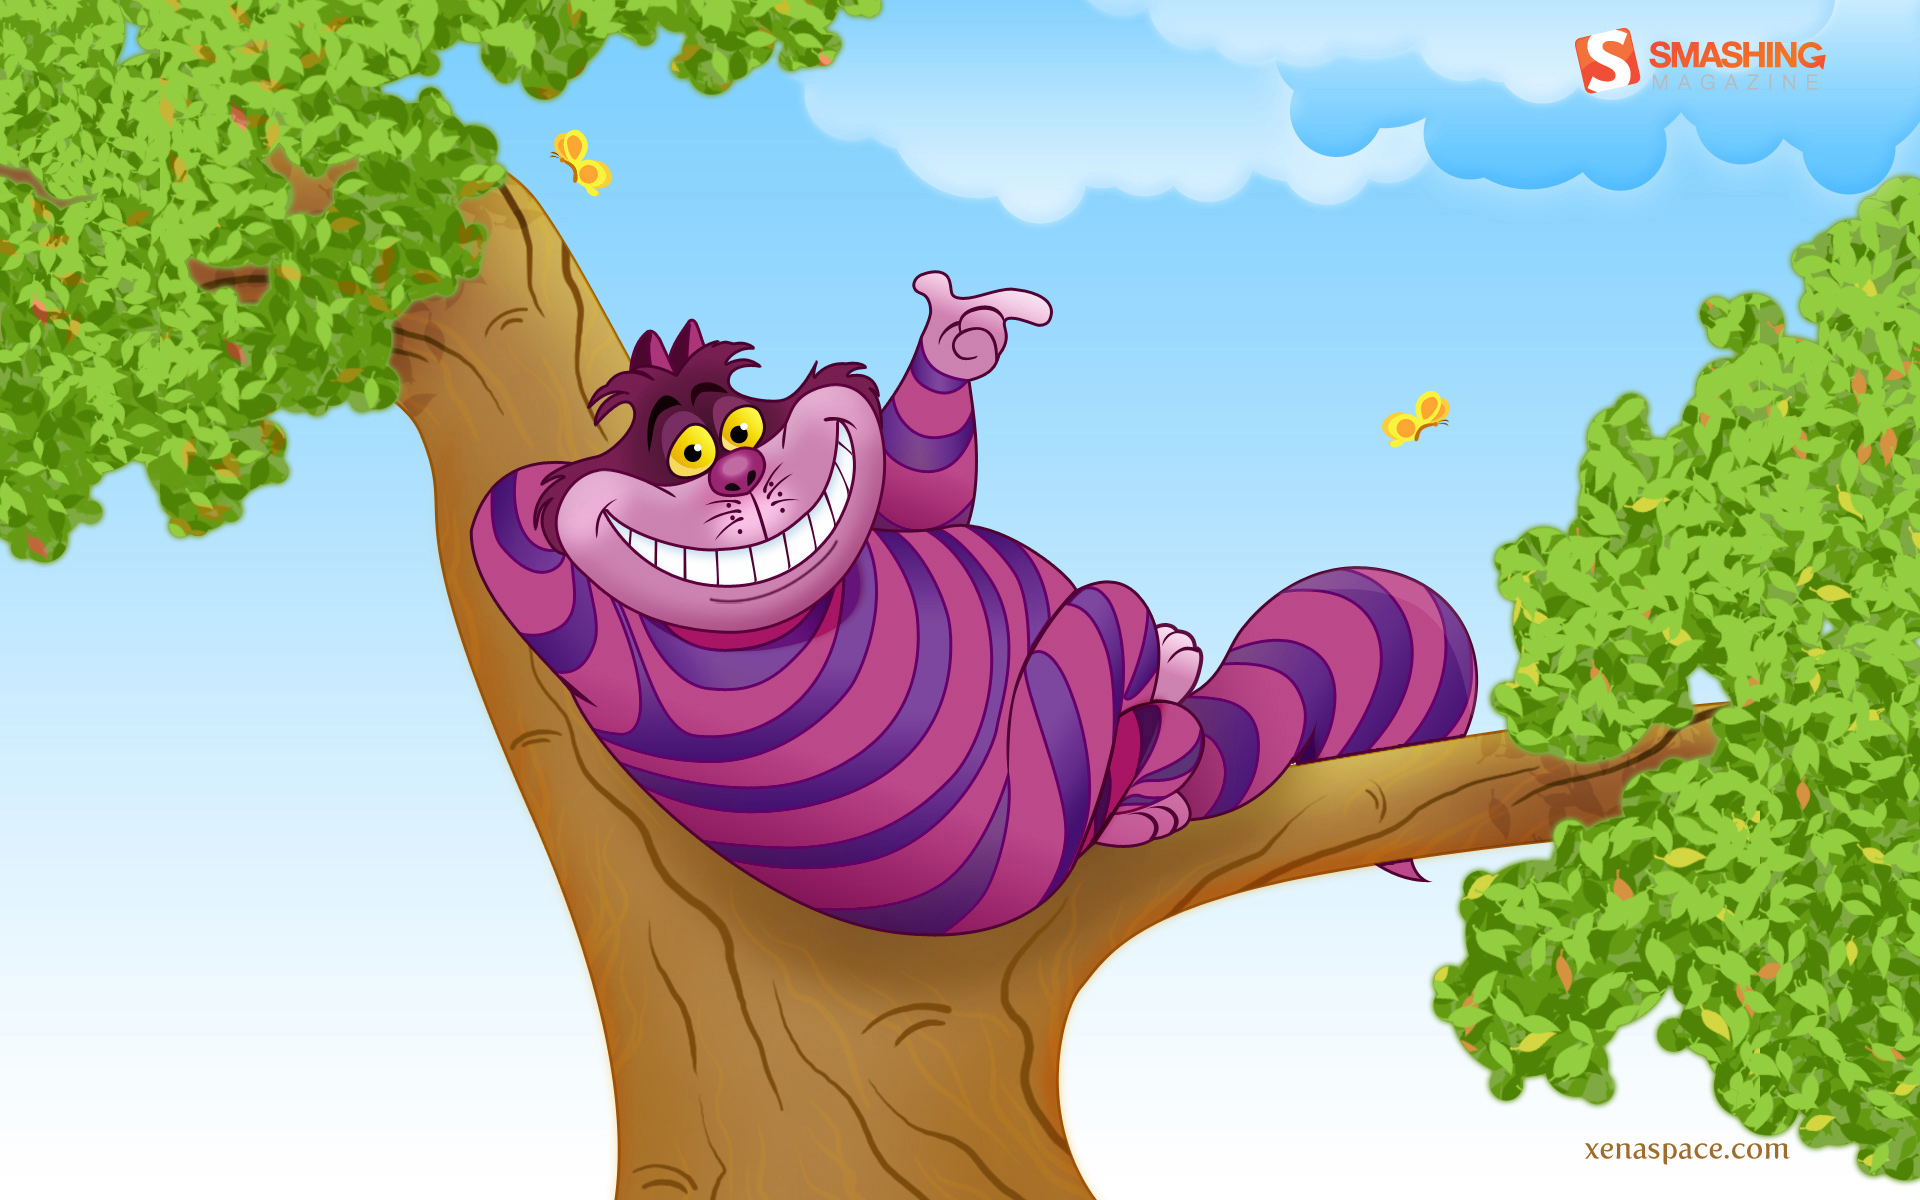 Image November08 Cheshire Cat Nocal Jpg Disneywiki